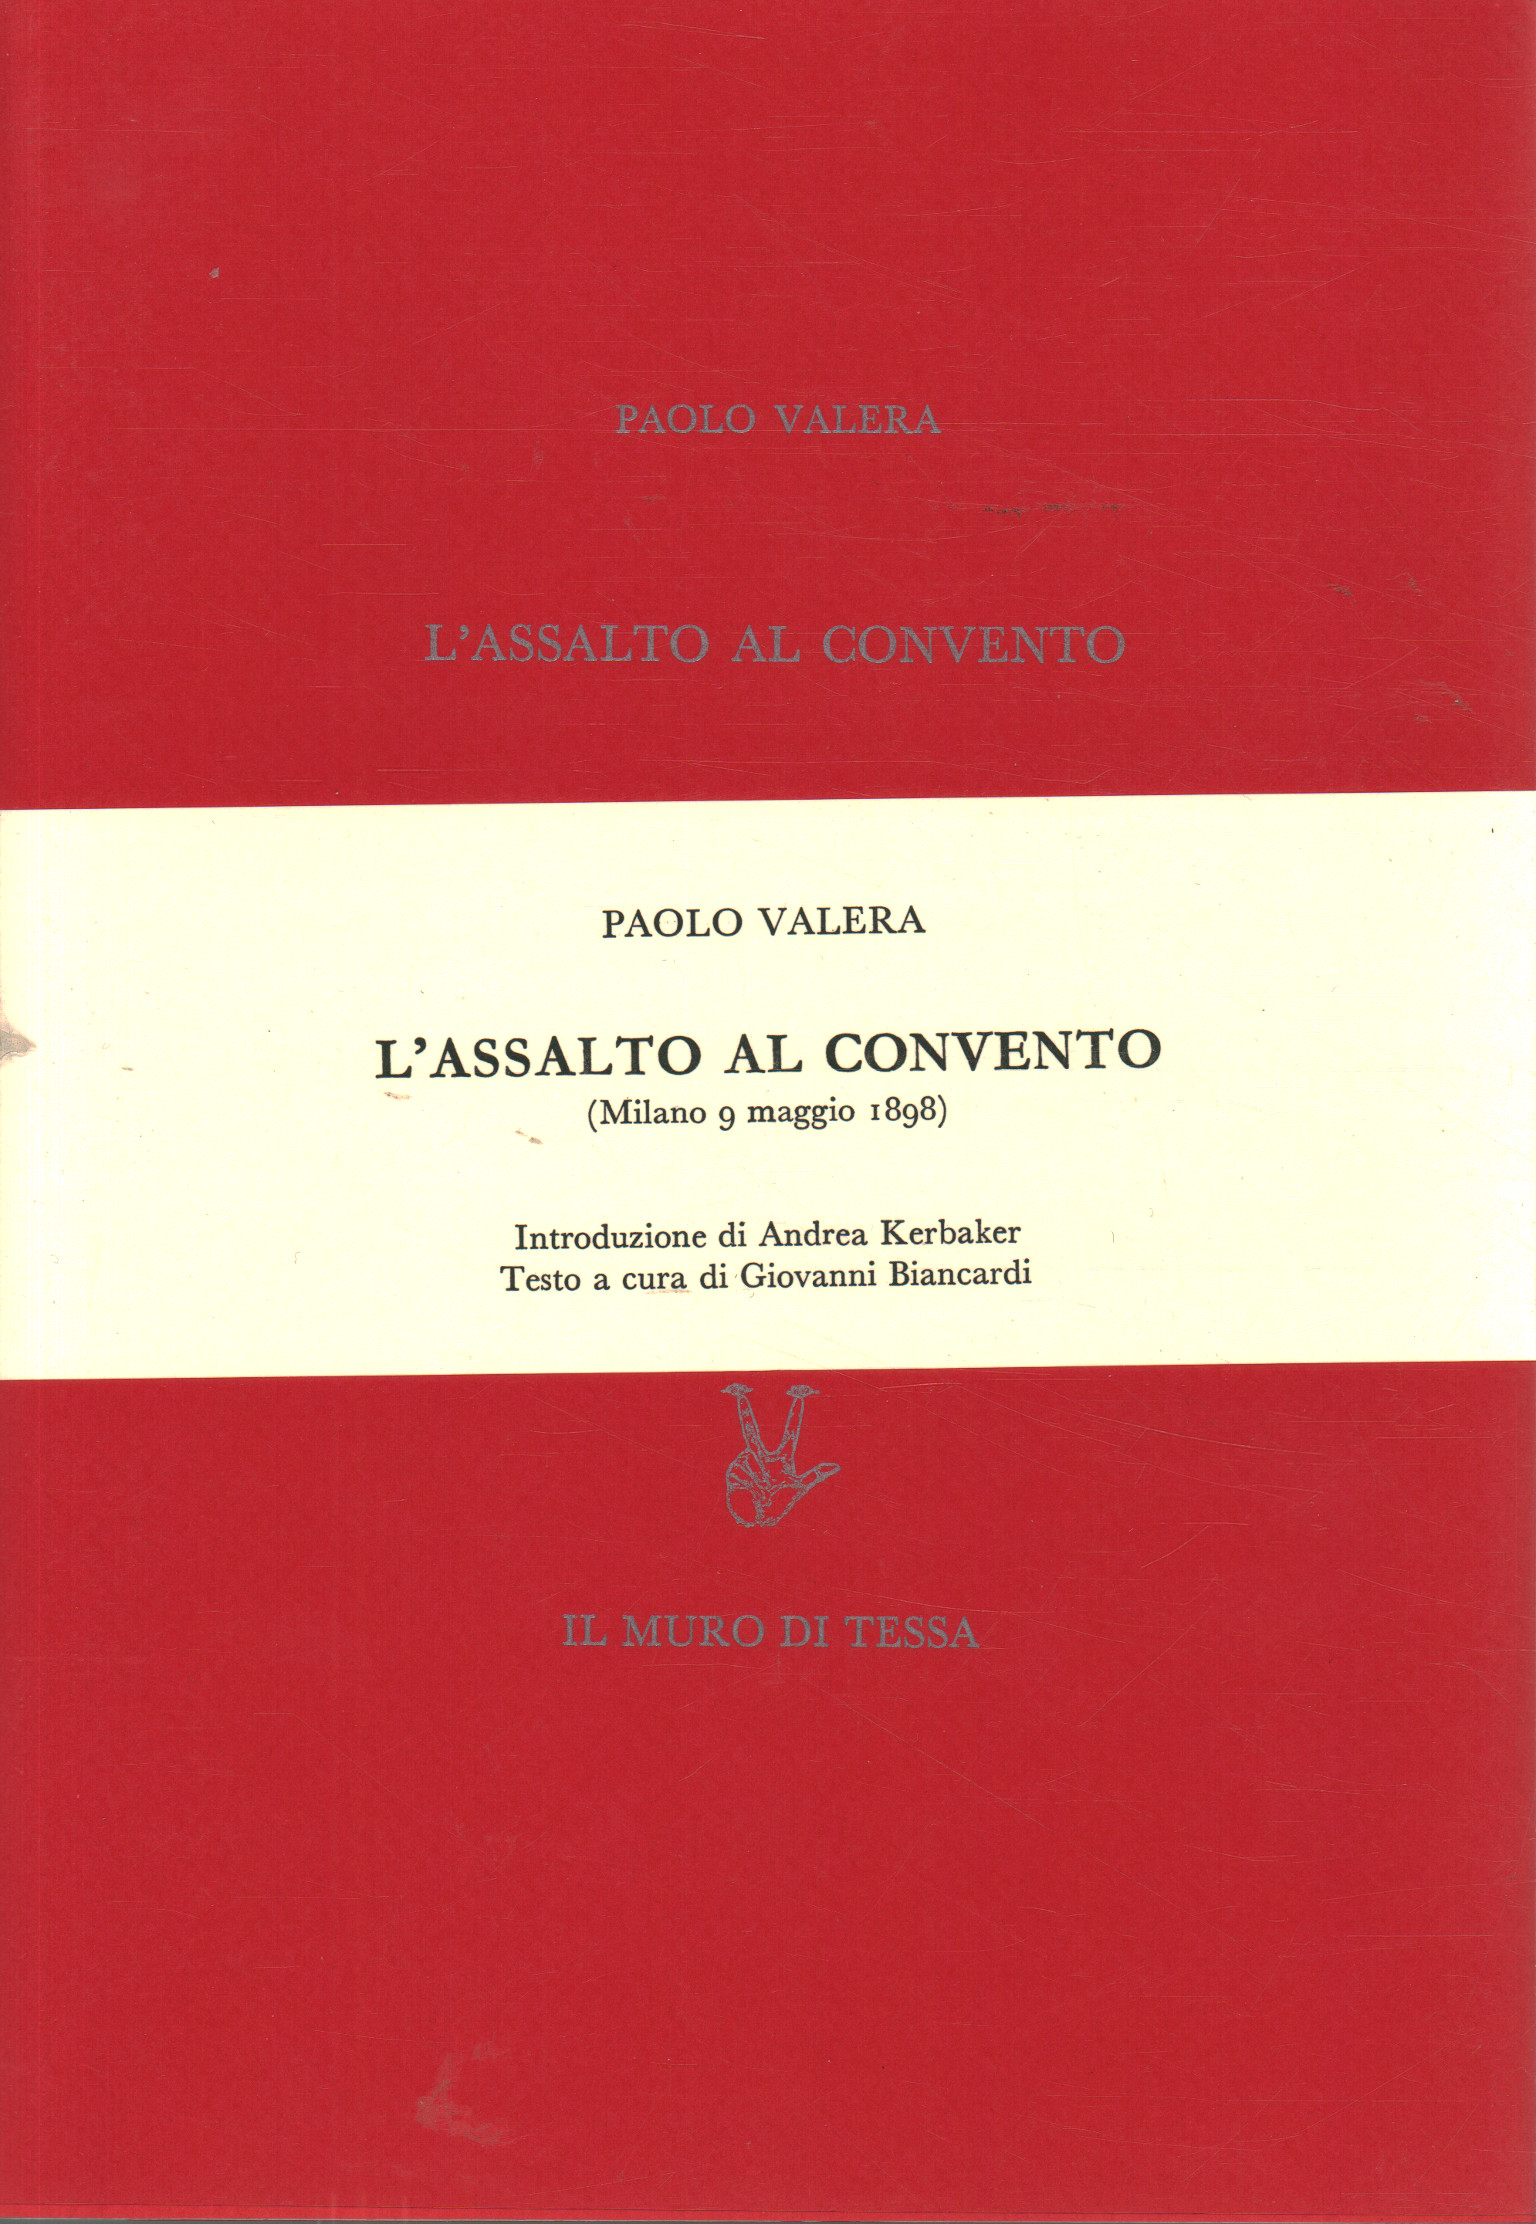 L'assaut du couvent (Milan 9 mai 1898), Paolo Valera